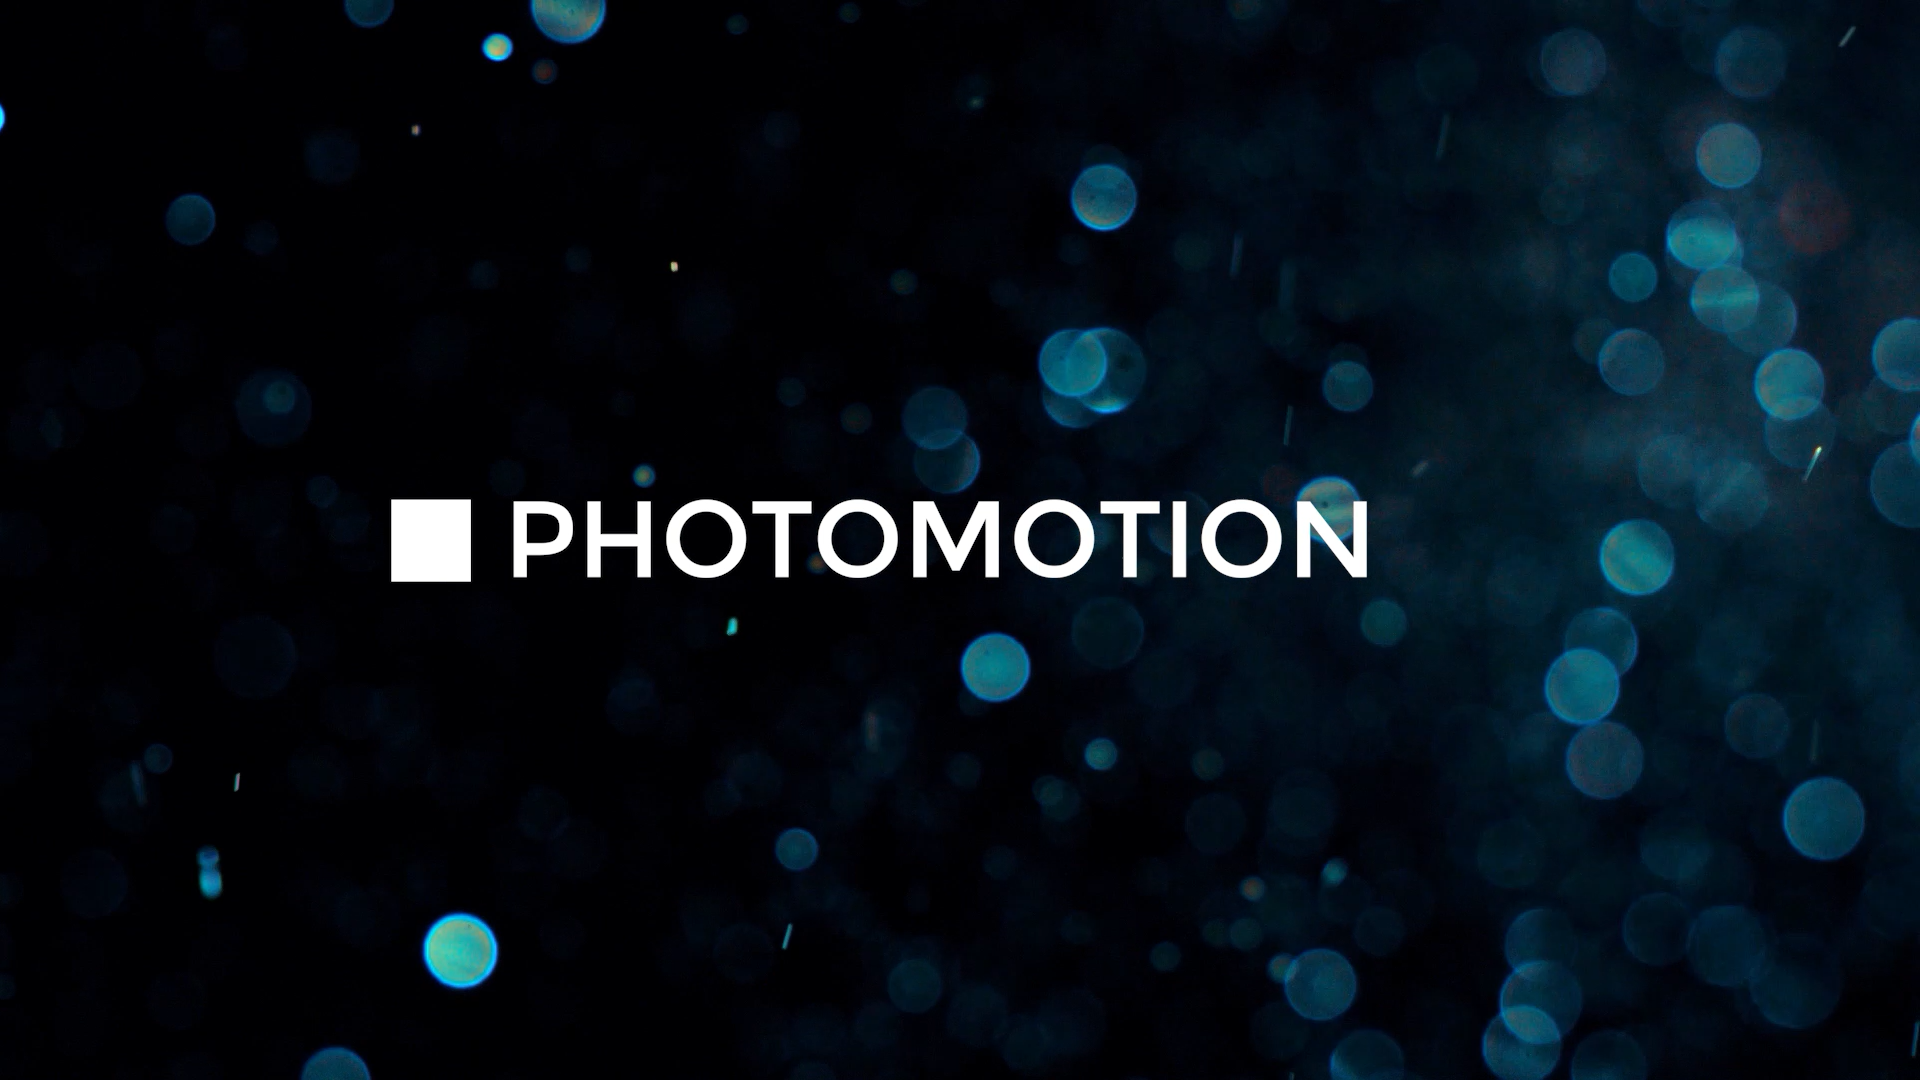 Photomotion